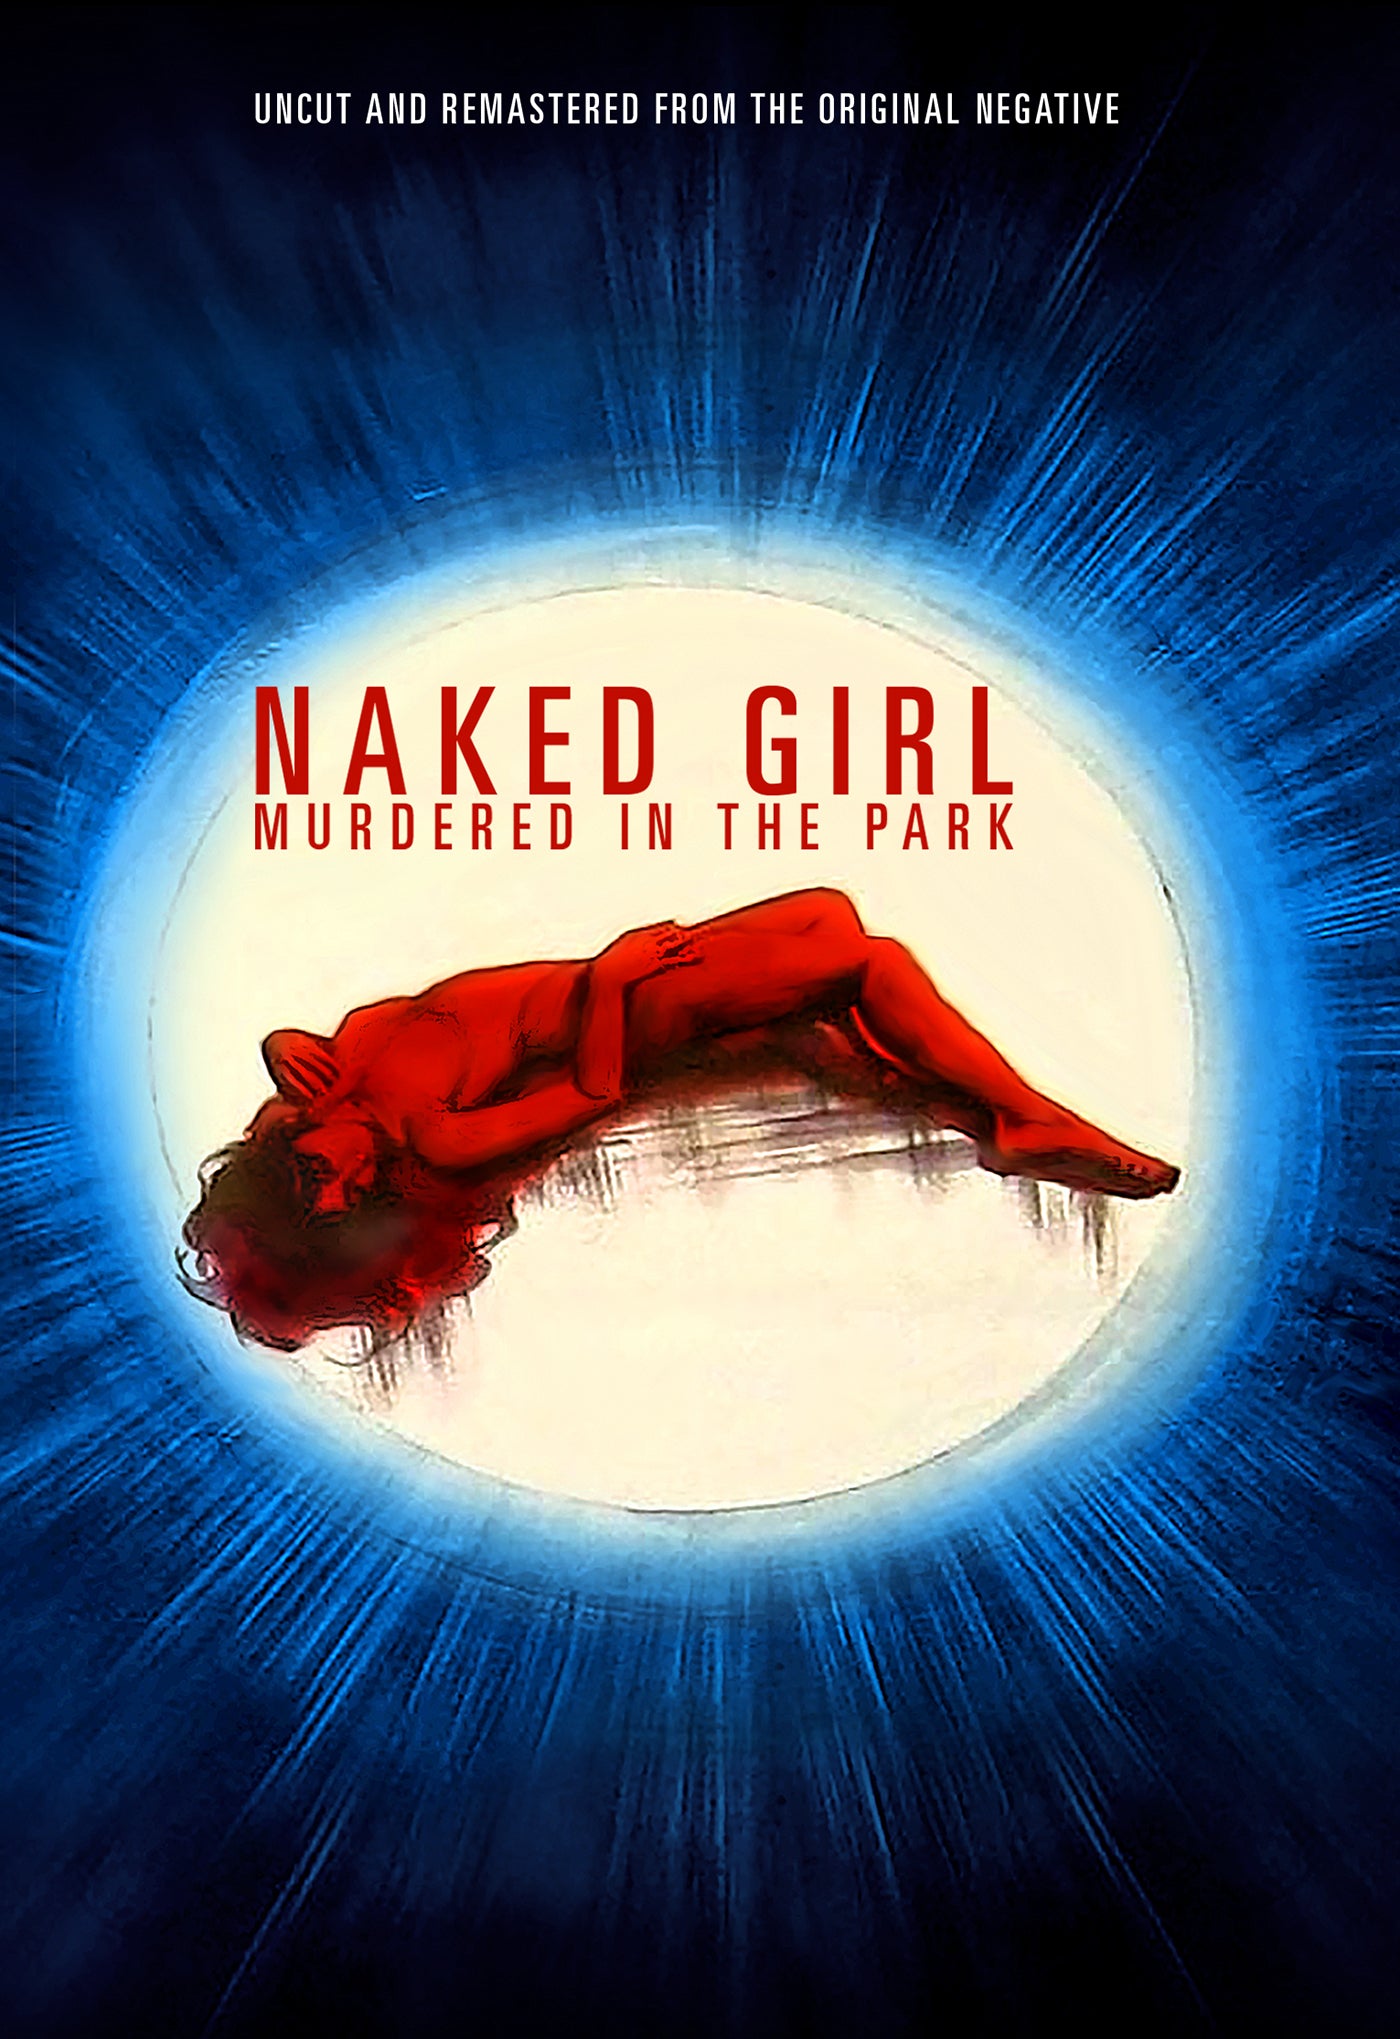 NAKED GIRL MURDERED IN THE PARK DVD